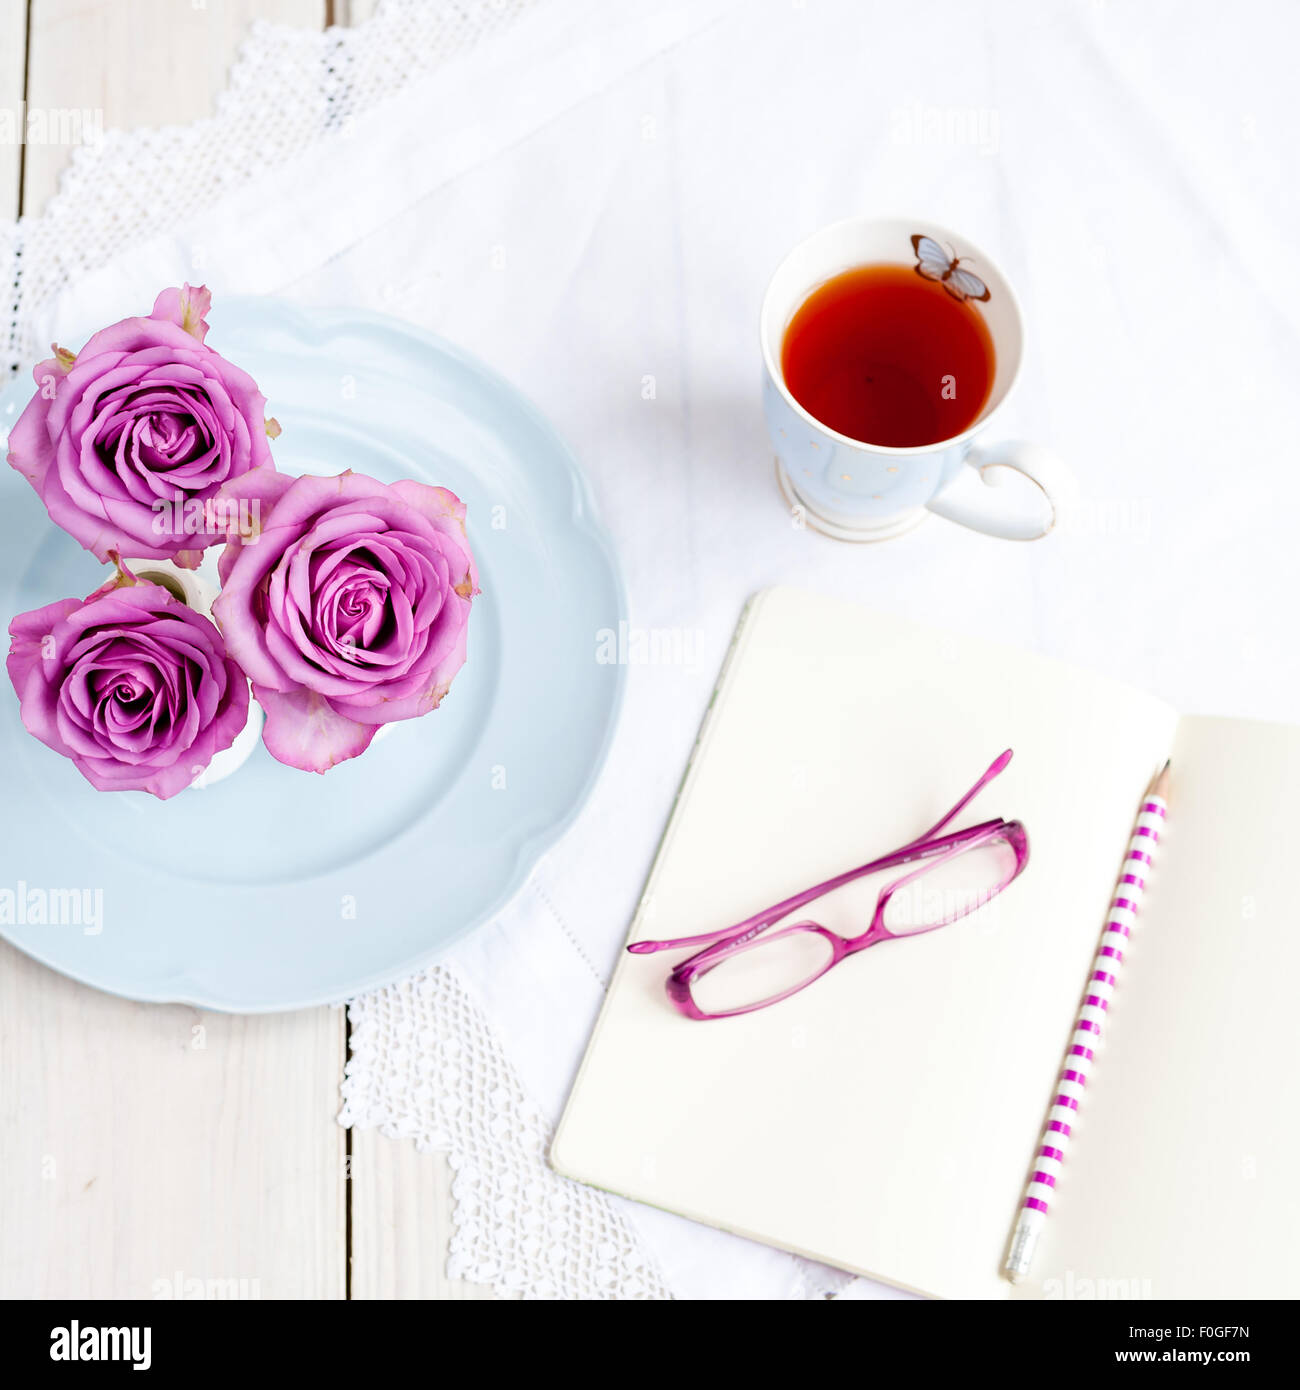 Trois roses dans des vases sur plaque bleue avec tasse de thé et ouvert avec des lunettes d'ordinateur portable et crayon Banque D'Images